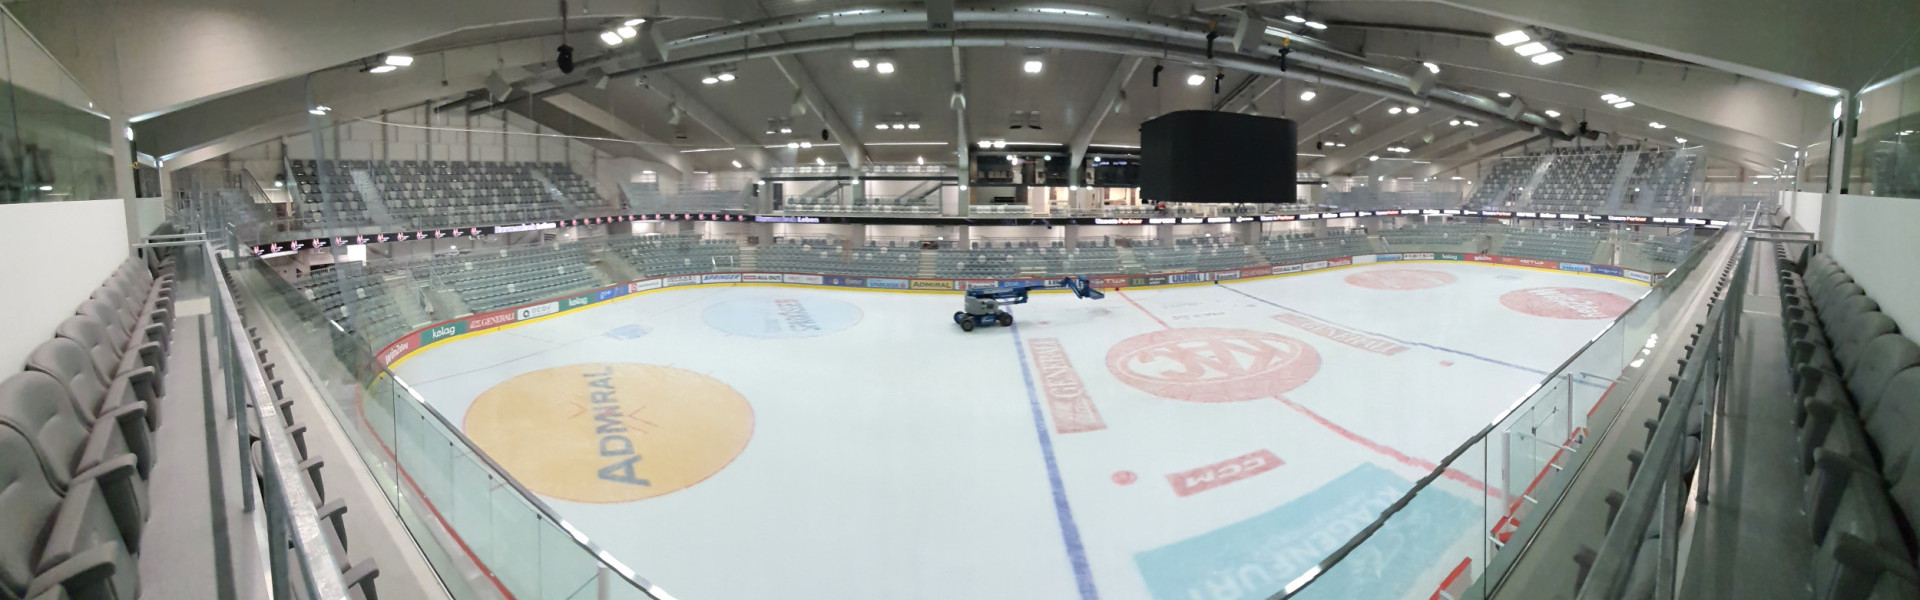 Für den Eishockeysport in Klagenfurt wird am Freitag eine neue Ära eingeleitet